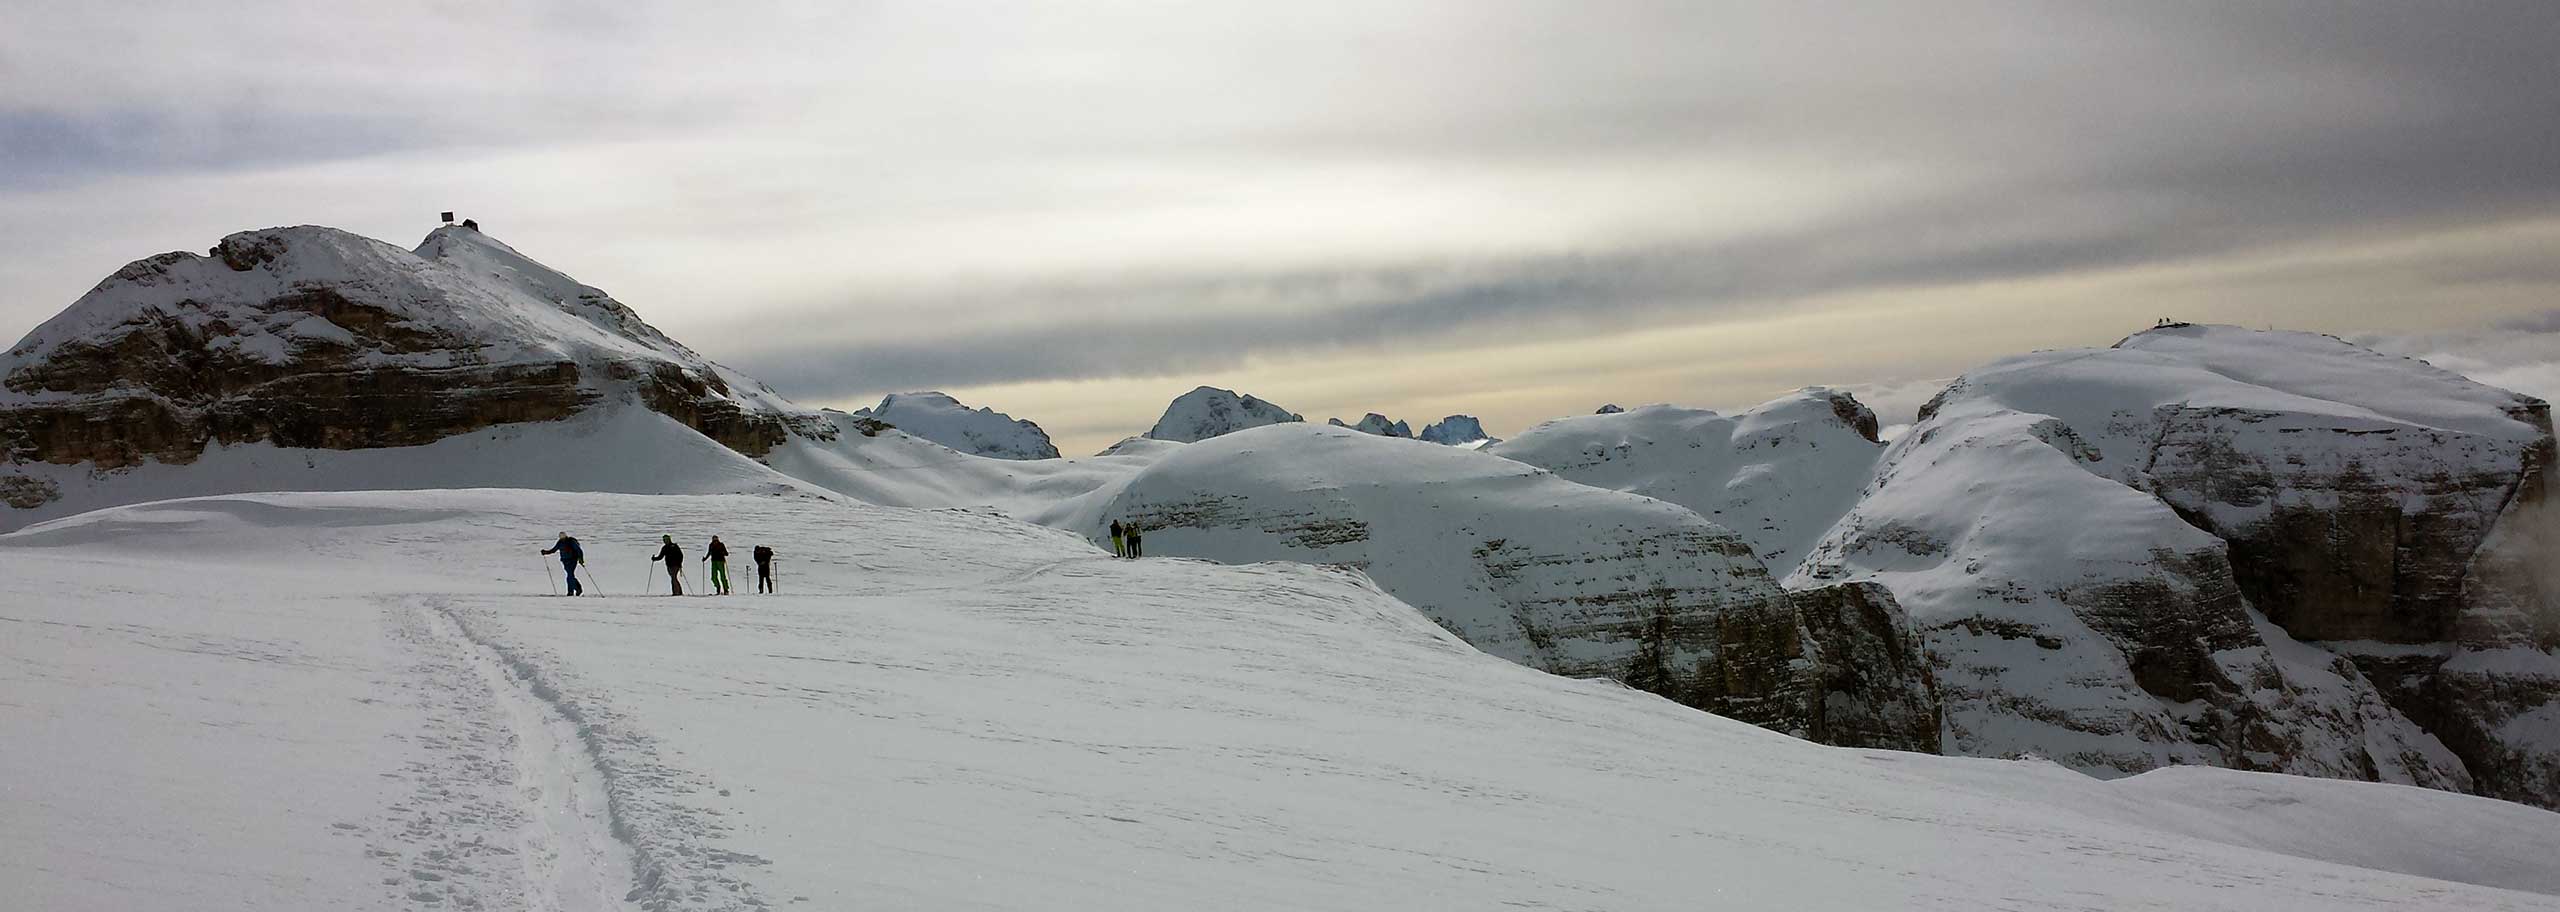 Sci Alpinismo in Dolomiti con le Guide Alpine della Val di Fassa